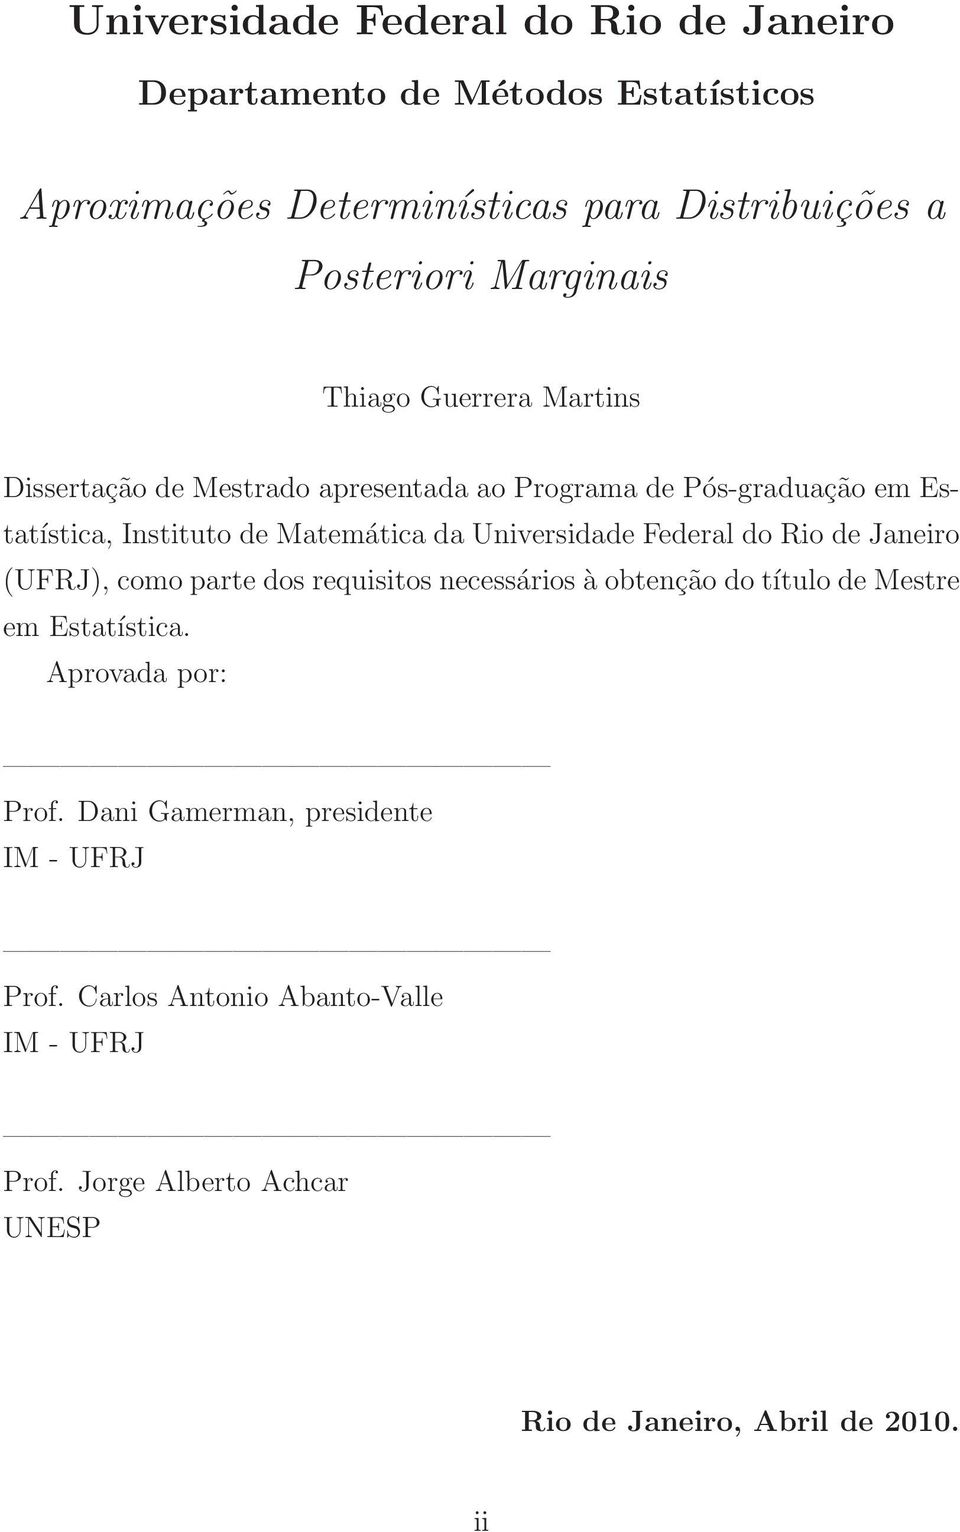 Universidade Federal do Rio de Janeiro (UFRJ), como parte dos requisitos necessários à obtenção do título de Mestre em Estatística.